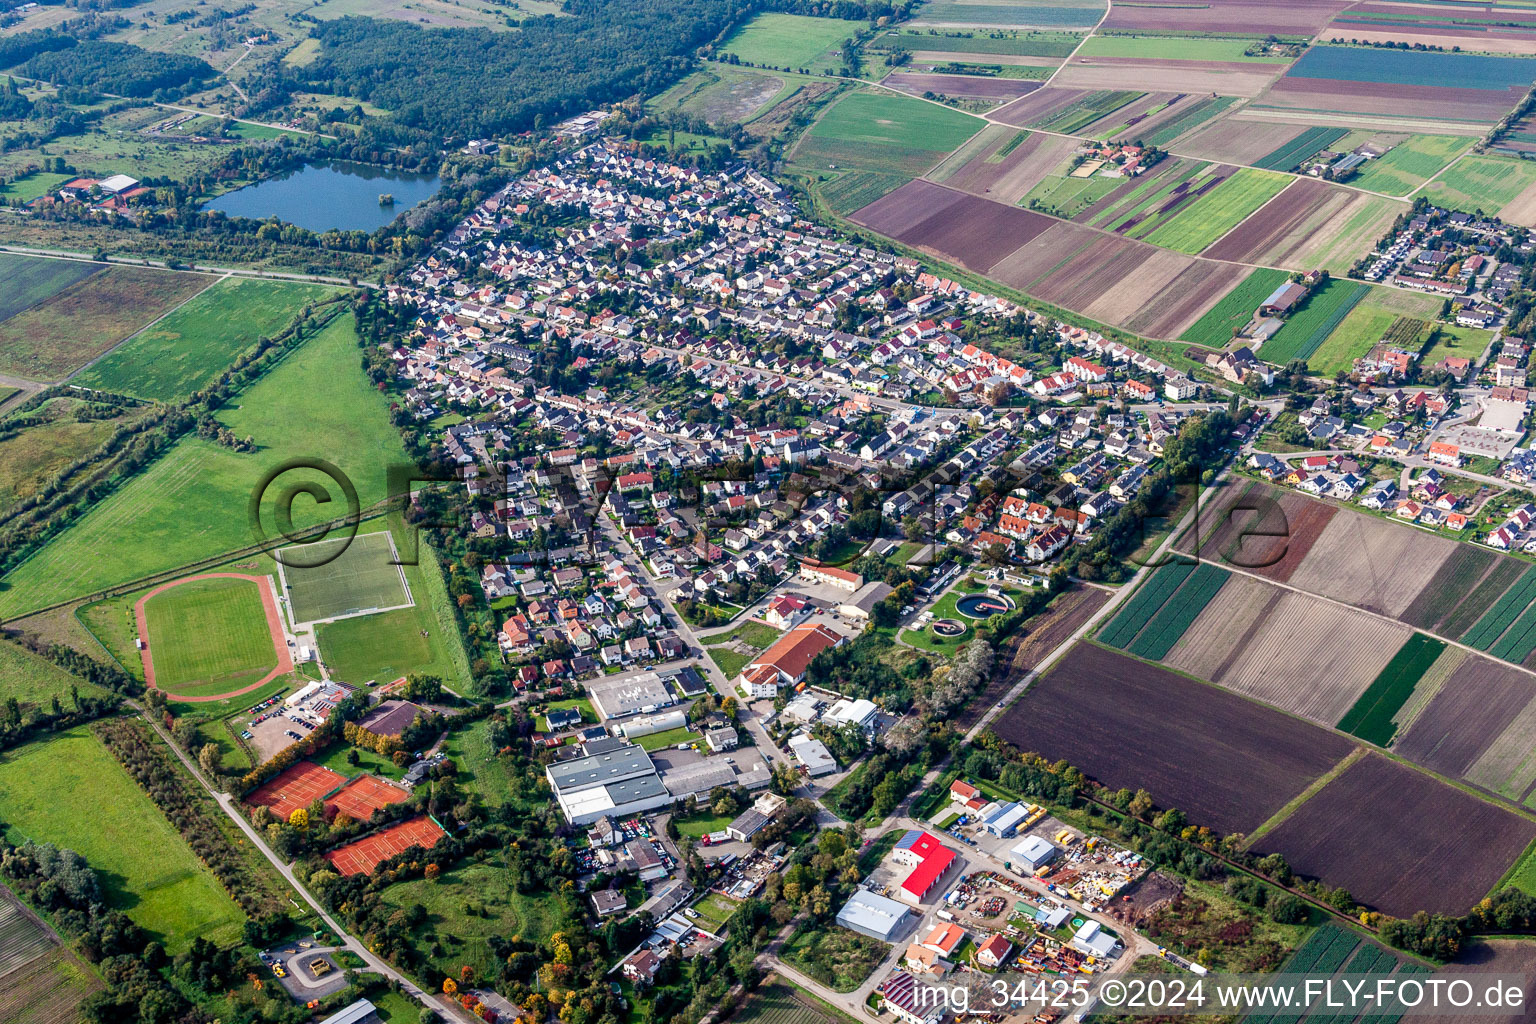 Vue aérienne de Zone d'habitation avec lac et terrains de sport à Lambsheim dans le département Rhénanie-Palatinat, Allemagne